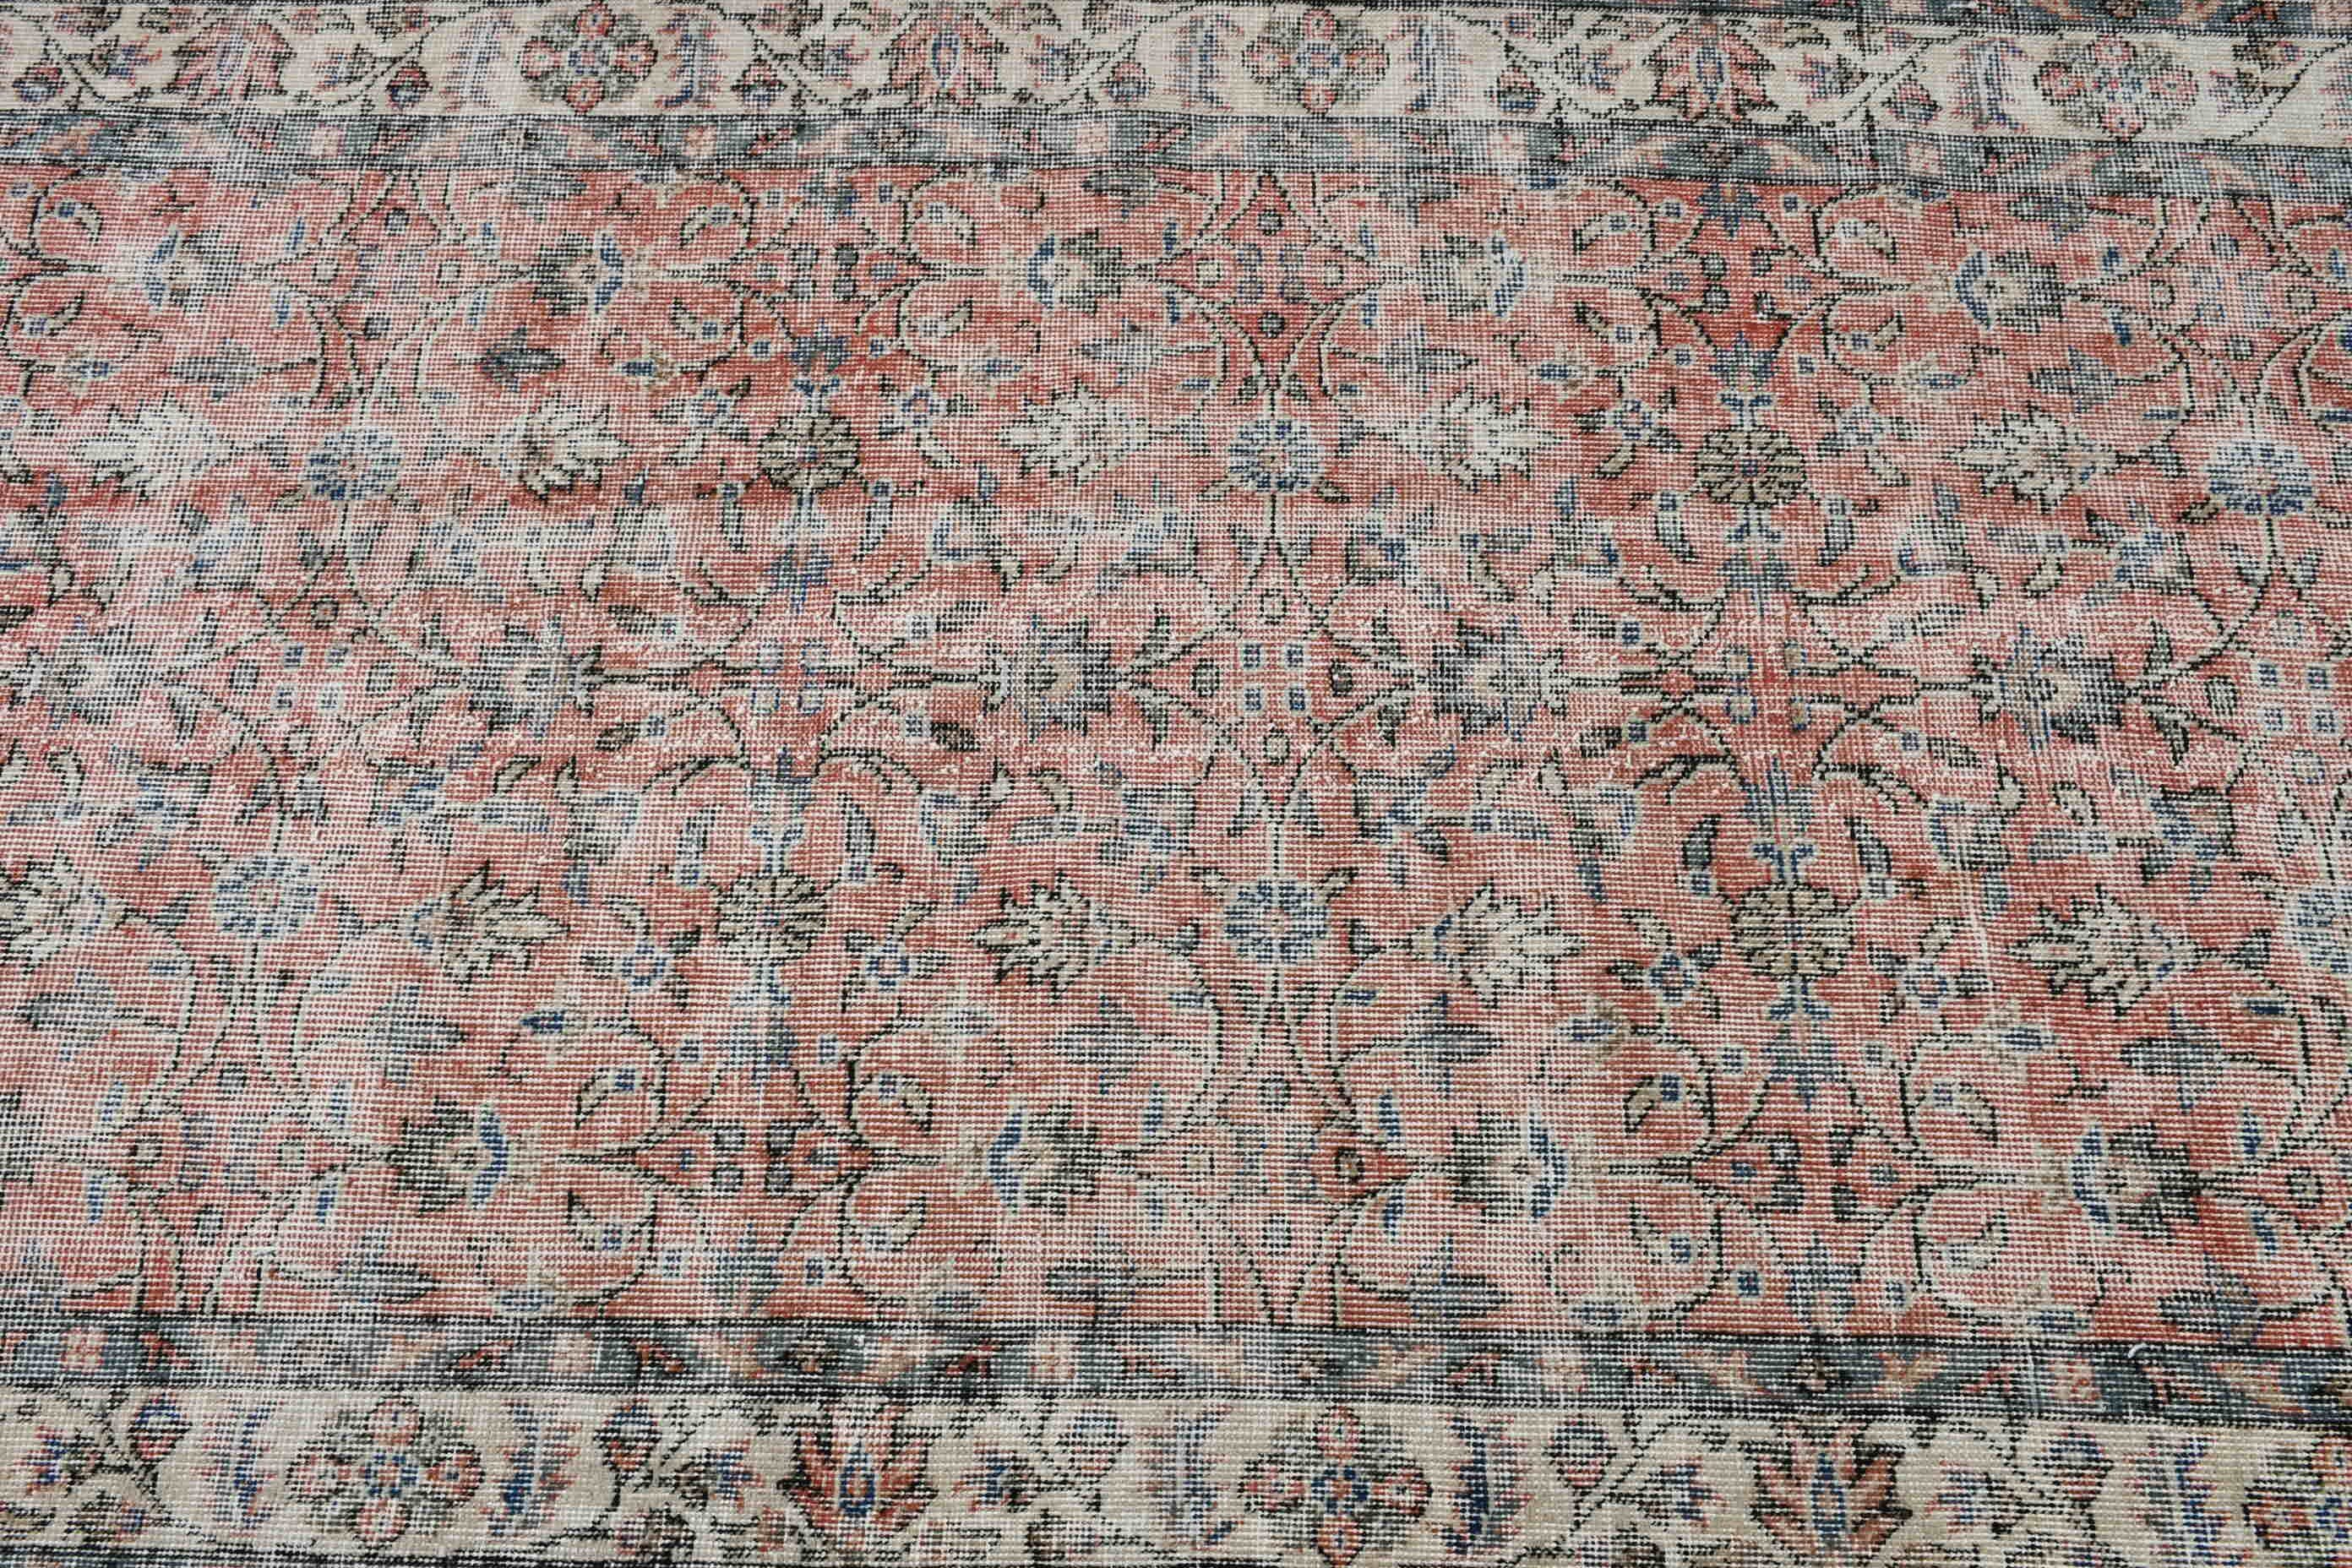 Turkish Rugs, Vintage Rugs, Rugs for Kitchen, Floor Rugs, Art Rug, Wool Rug, Pink  3.8x6.8 ft Area Rug, Living Room Rug